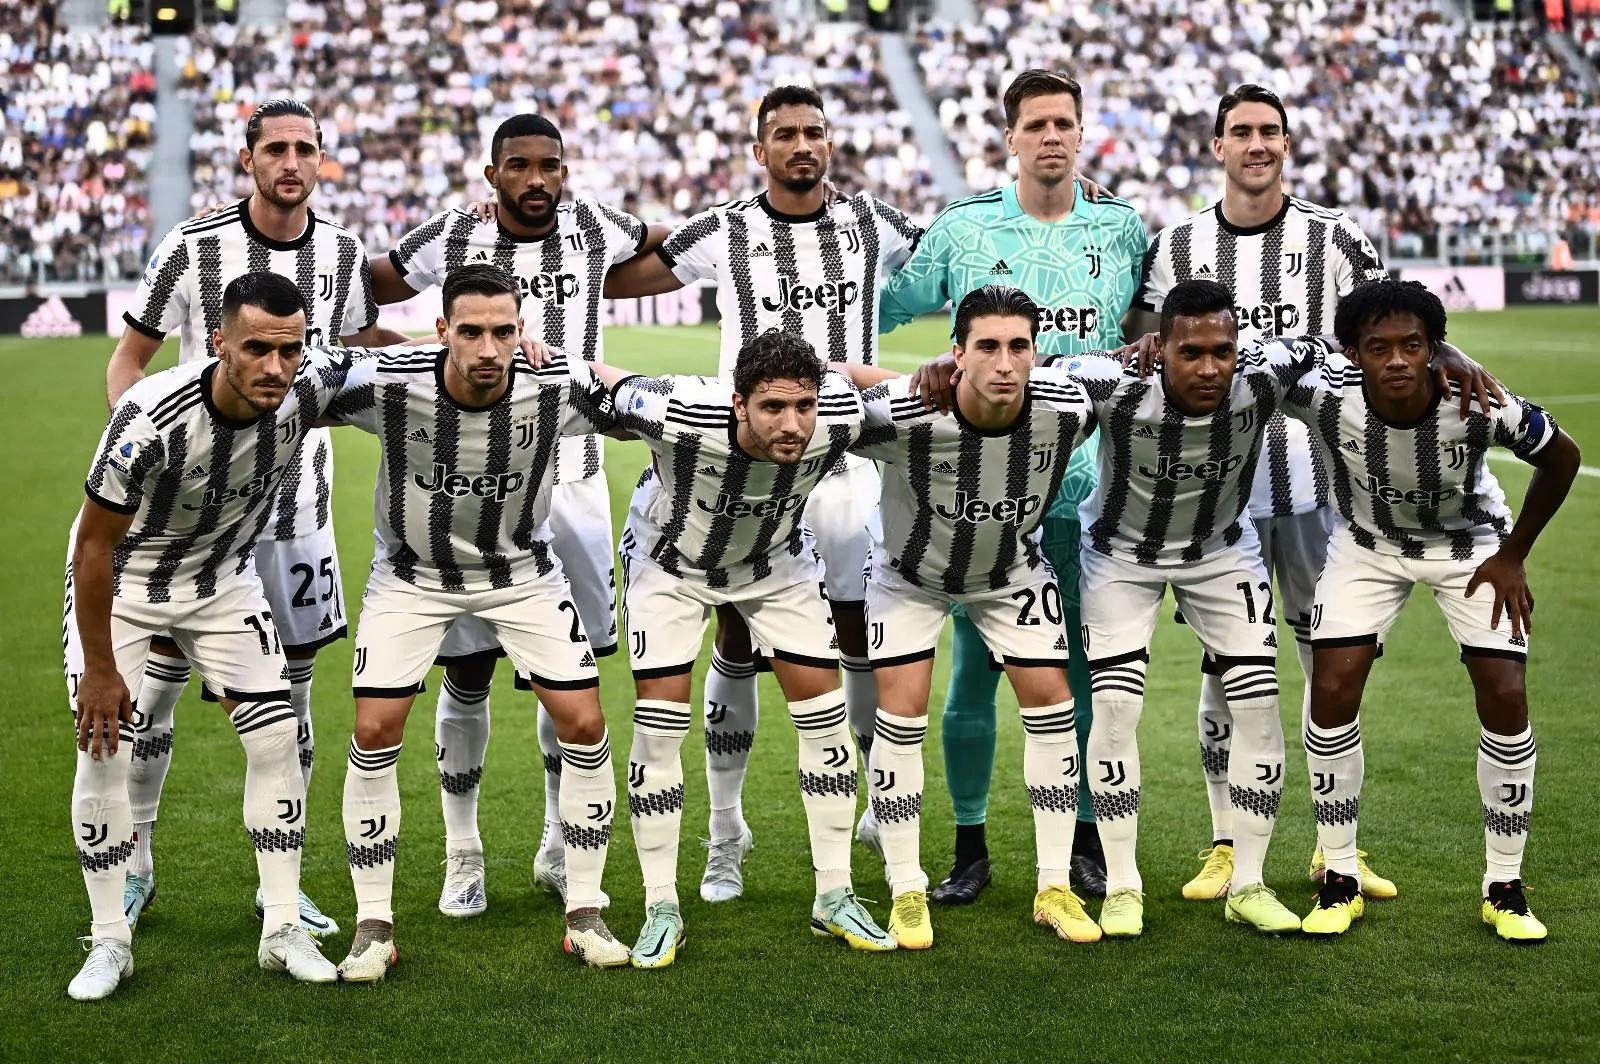 Rivelazione di mercato in diretta: “Lasceranno la Juventus in estate”